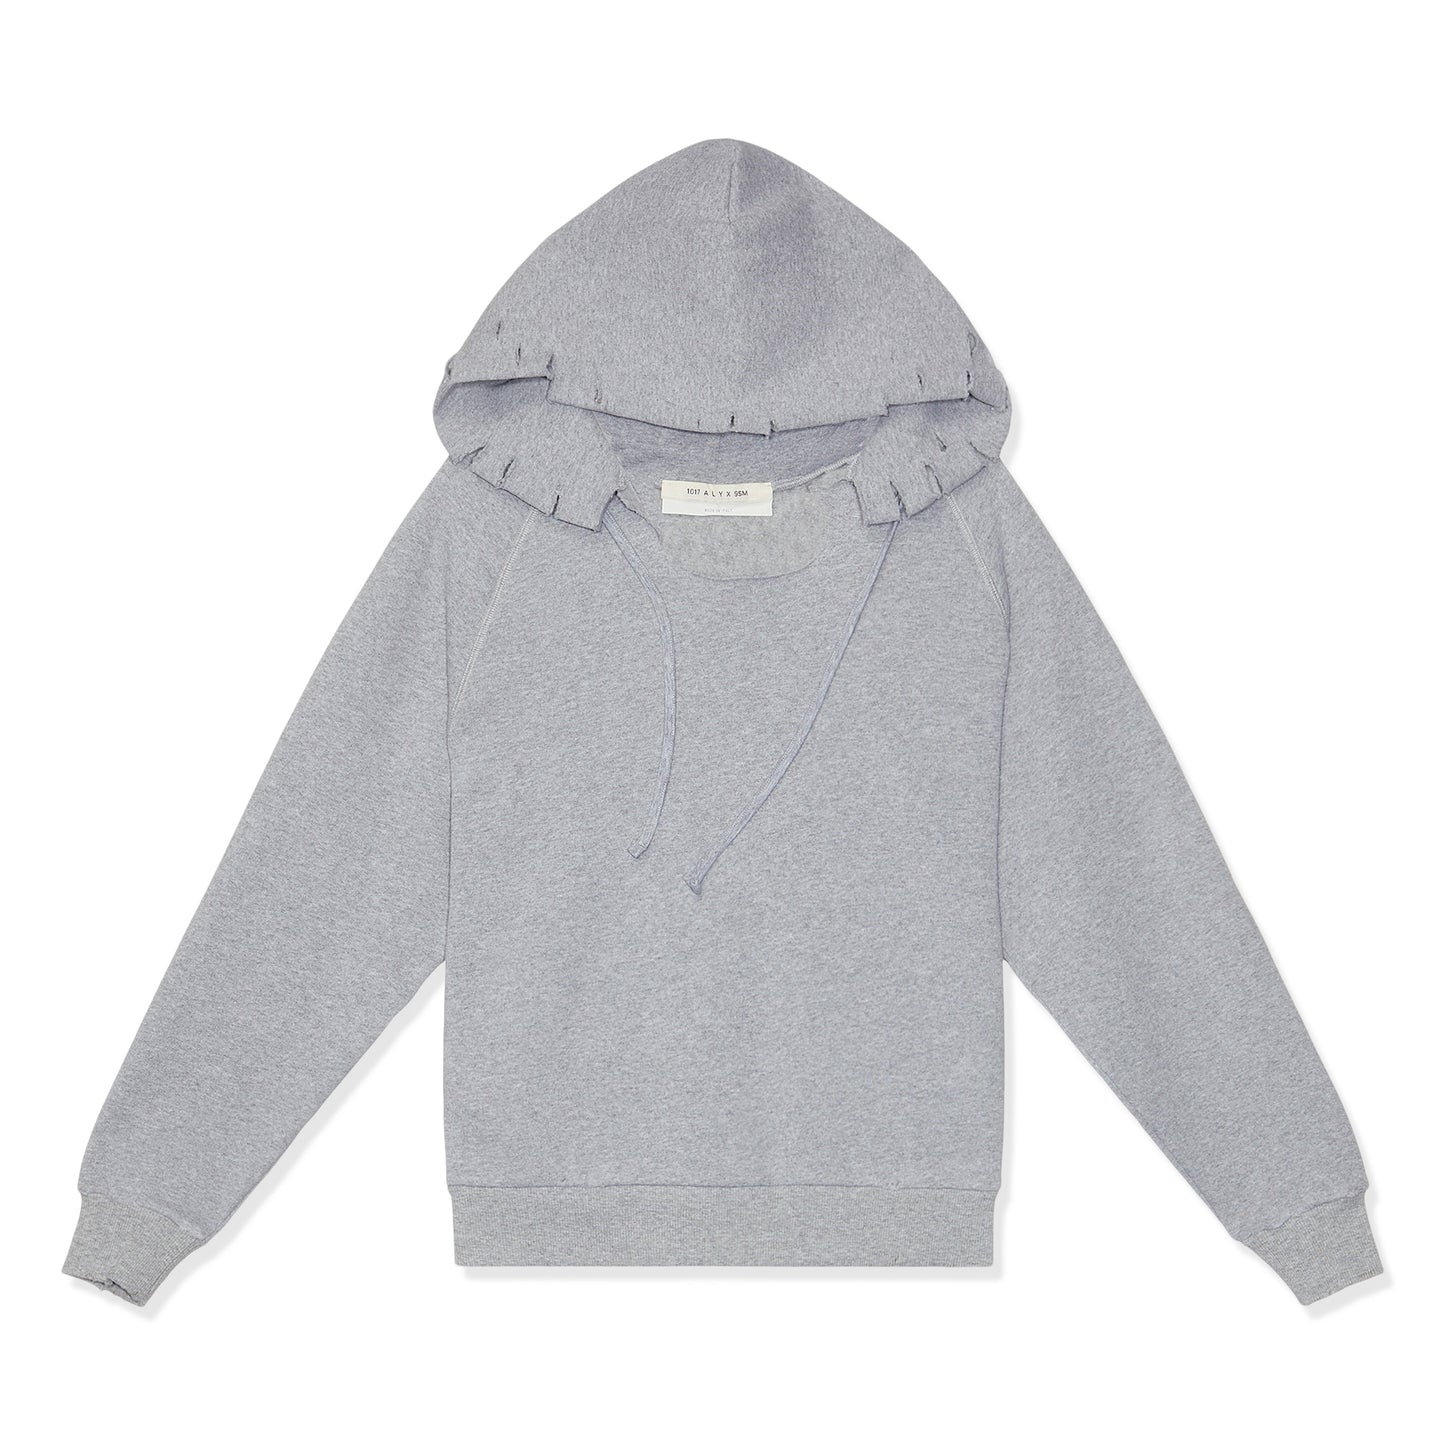 1017 ALYX 9SM Distressed Hoodie Sweatshirt (Grey Melange)